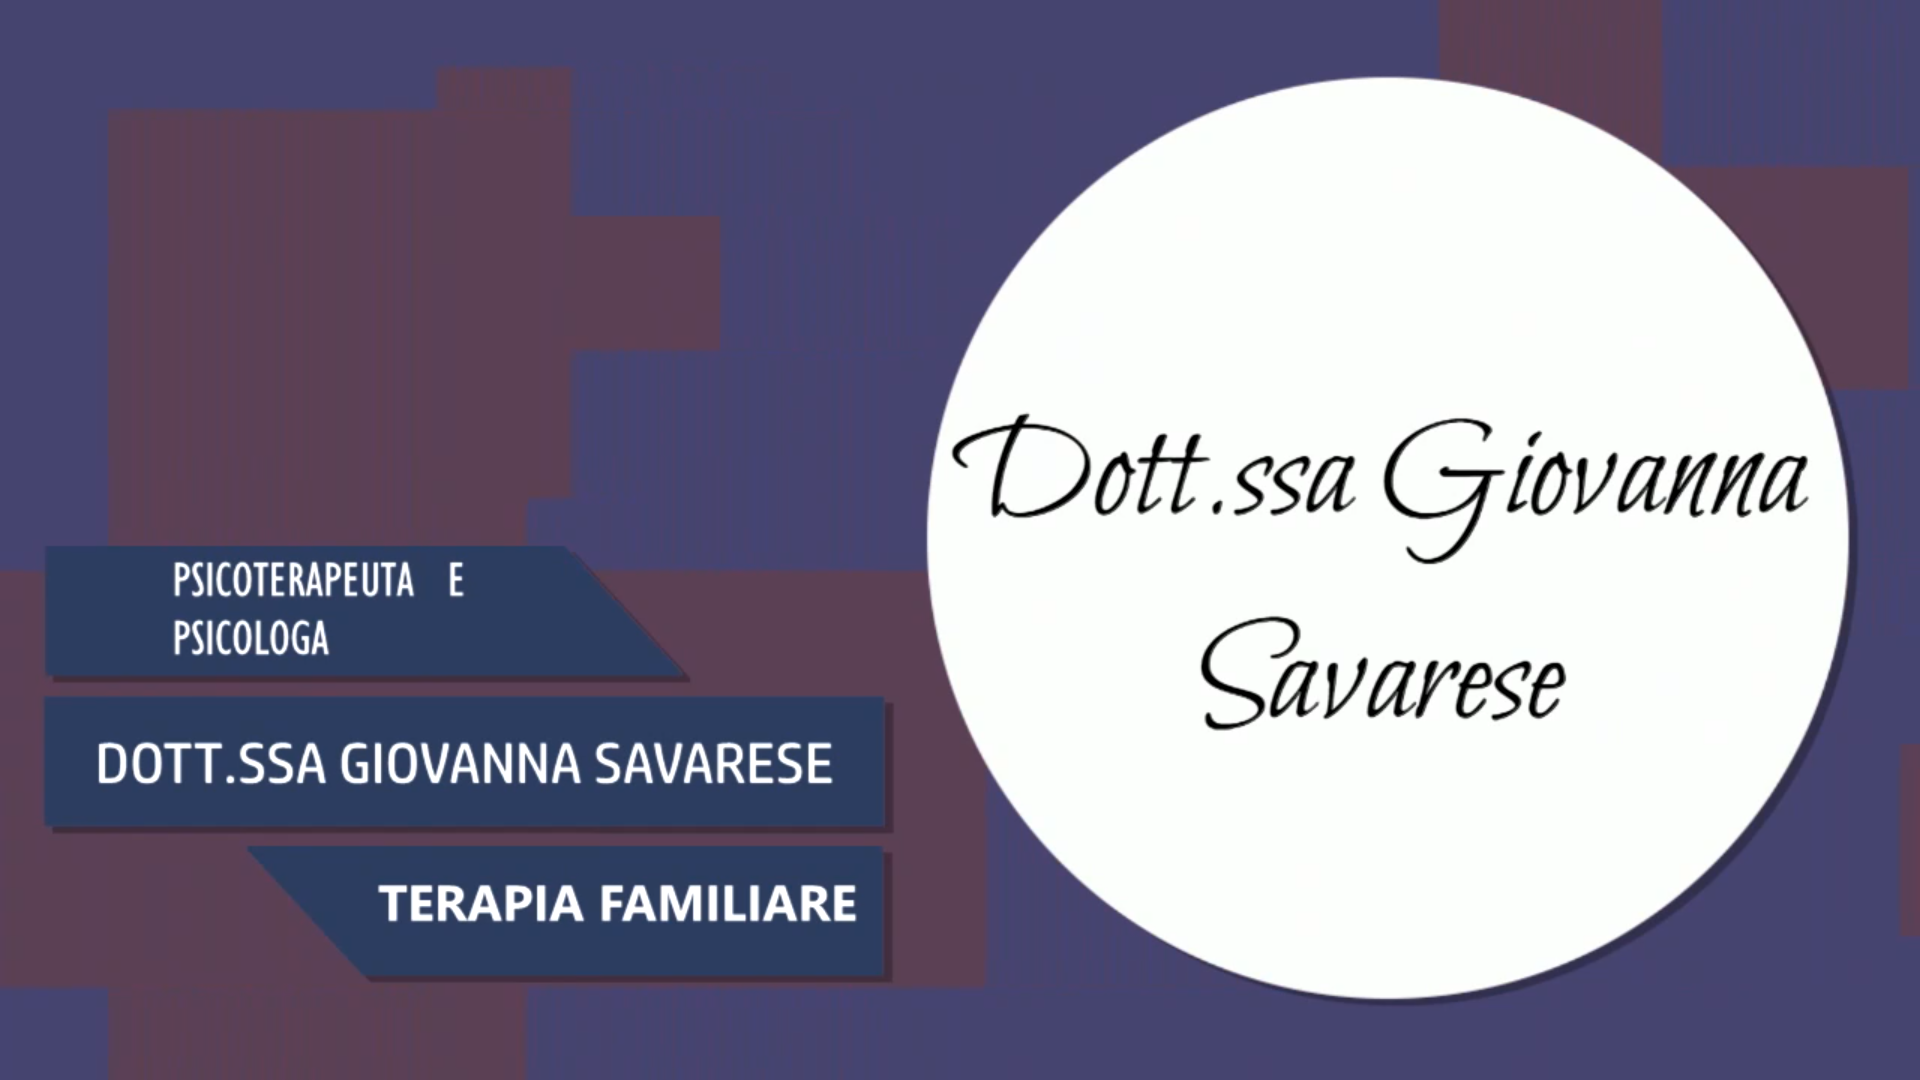 Intervista alla Dott.ssa Giovanna Savarese – Terapia Familiare